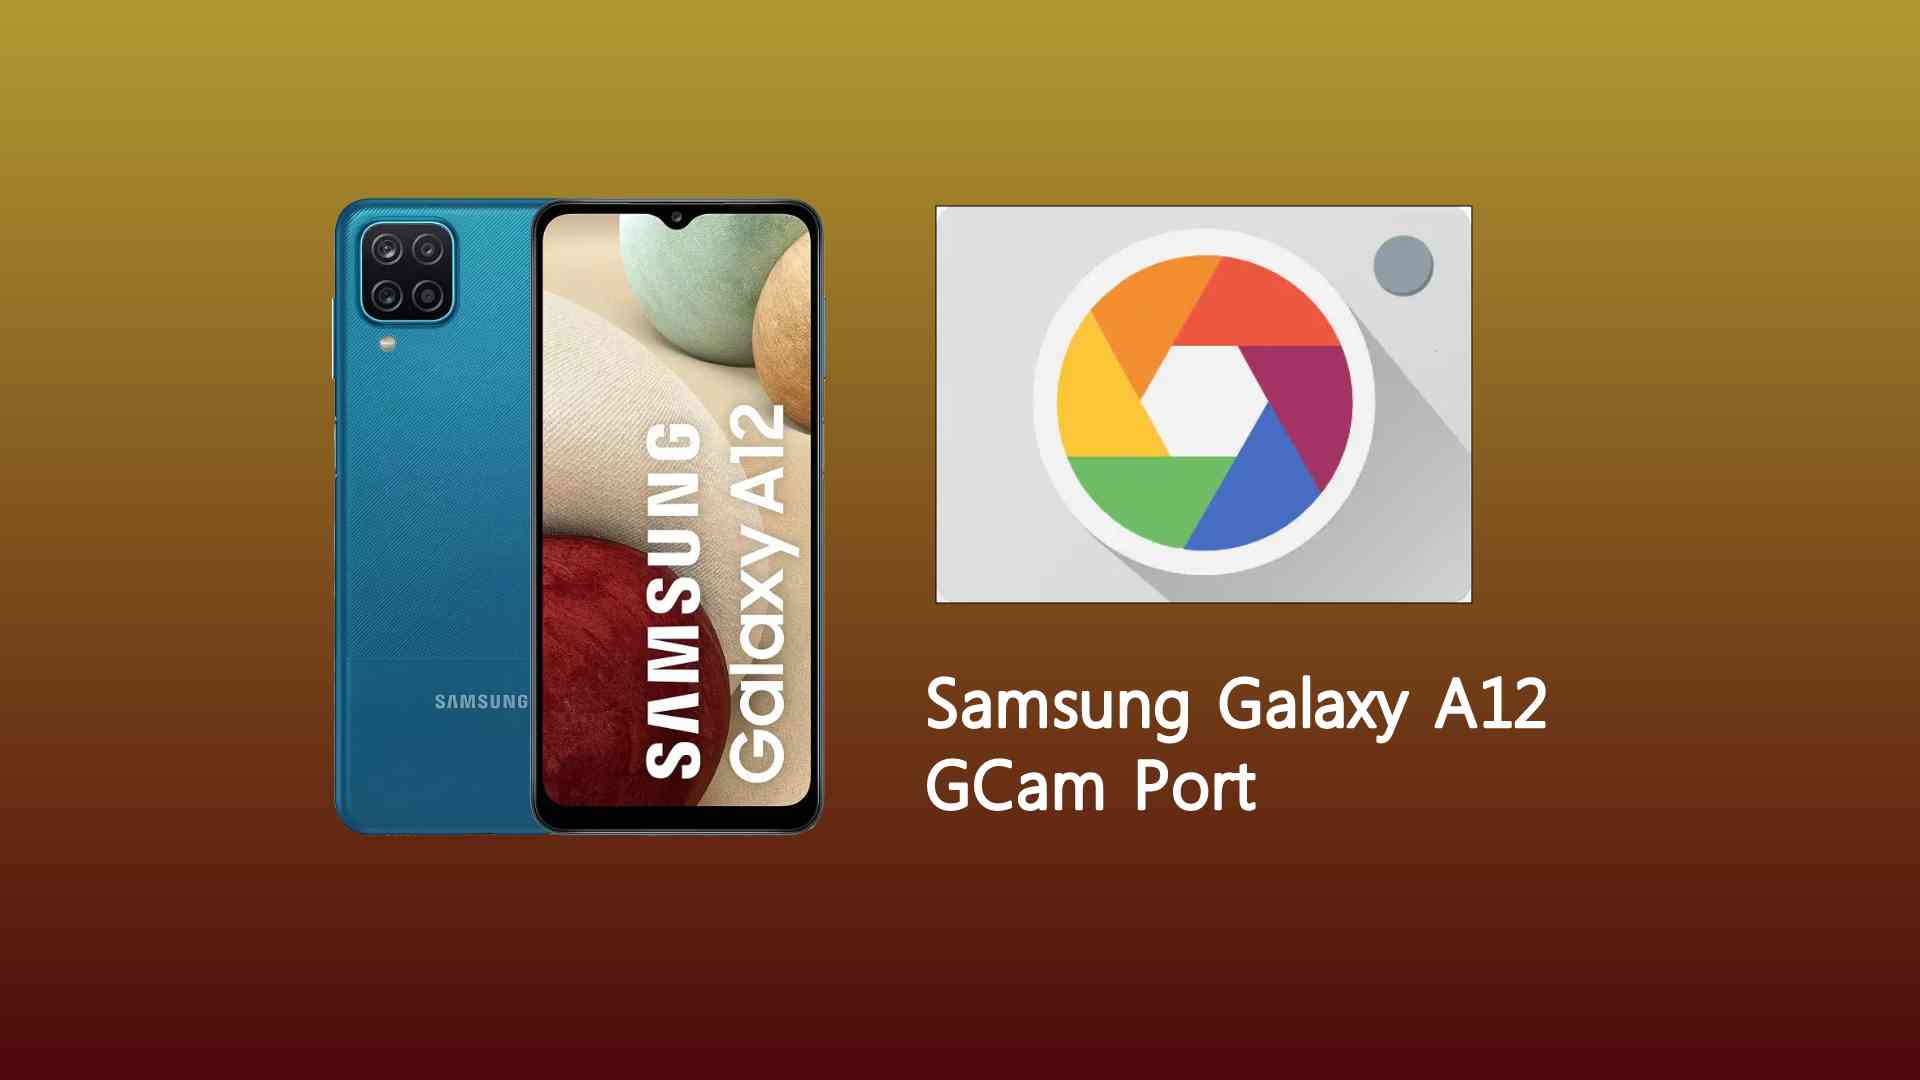 Samsung Galaxy A12 GCam Port